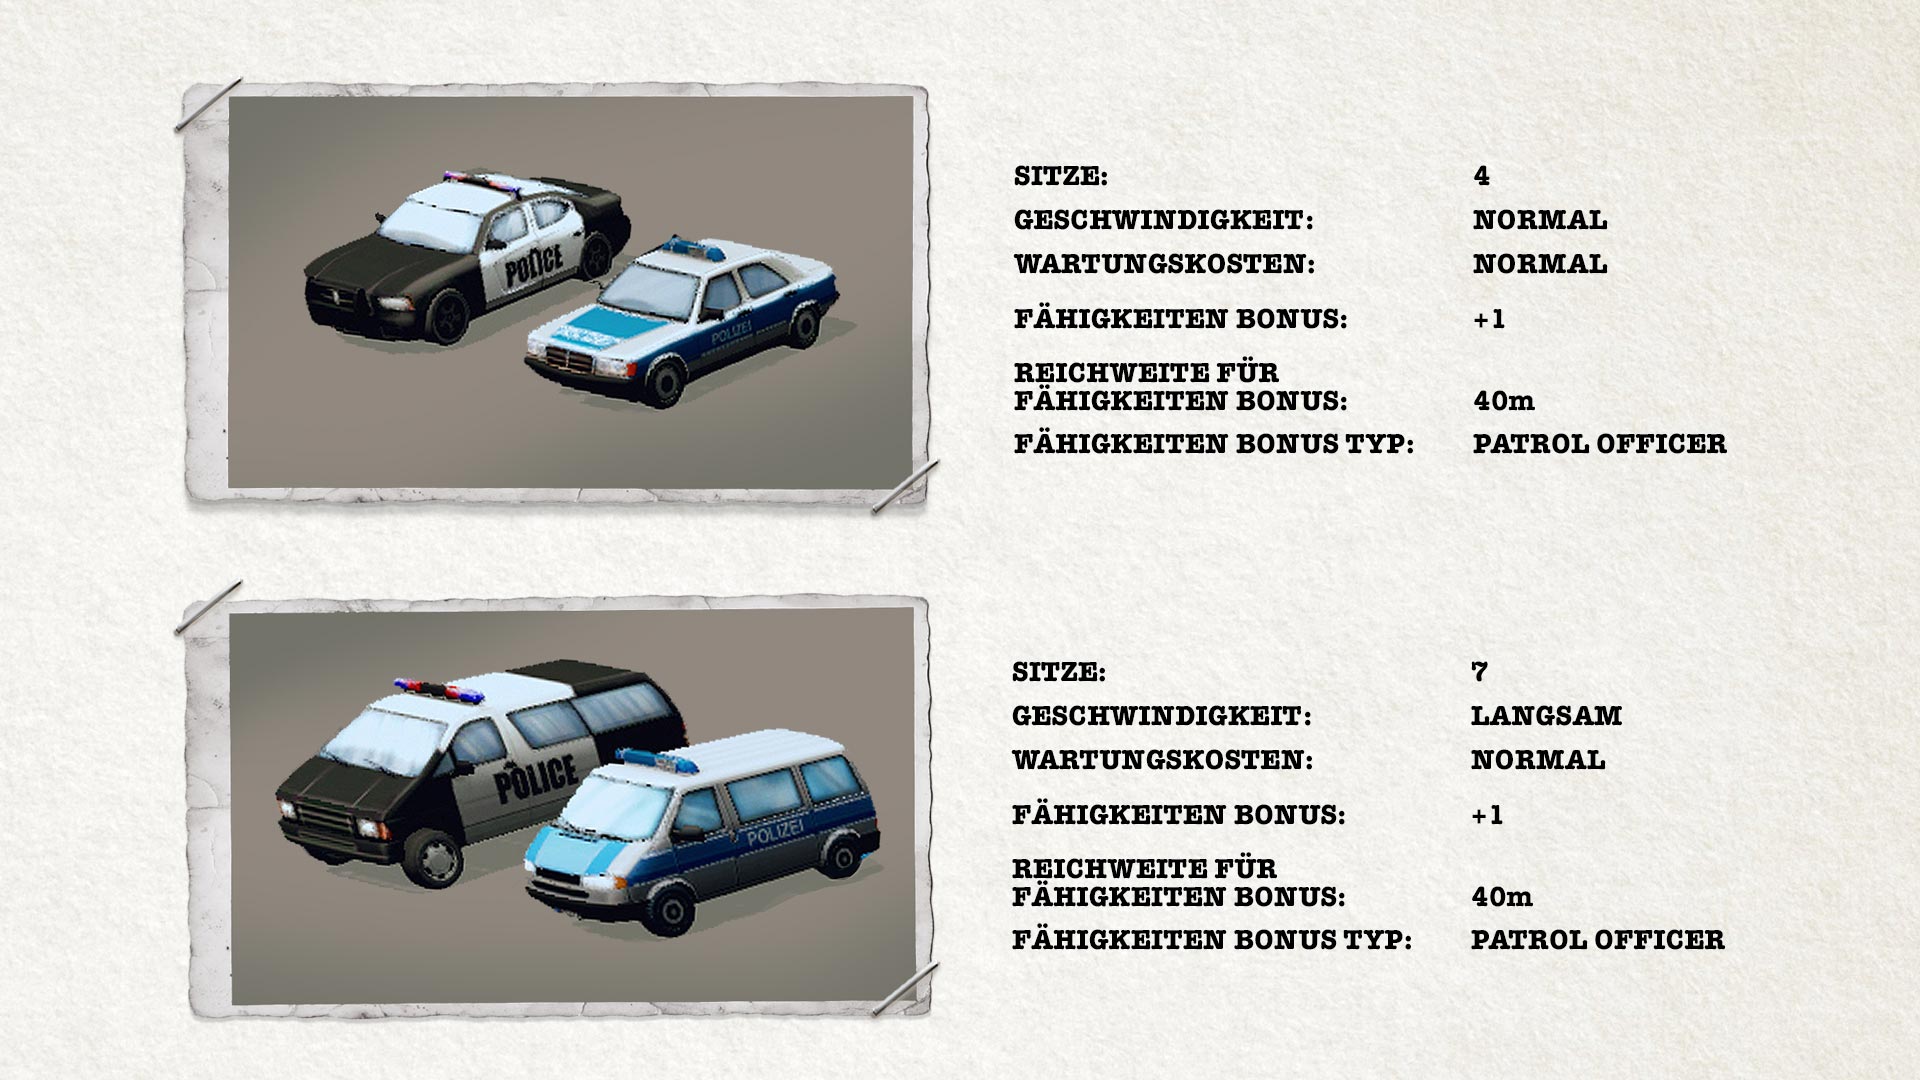 POLICE TACTICS: IMPERIO - Vehicles